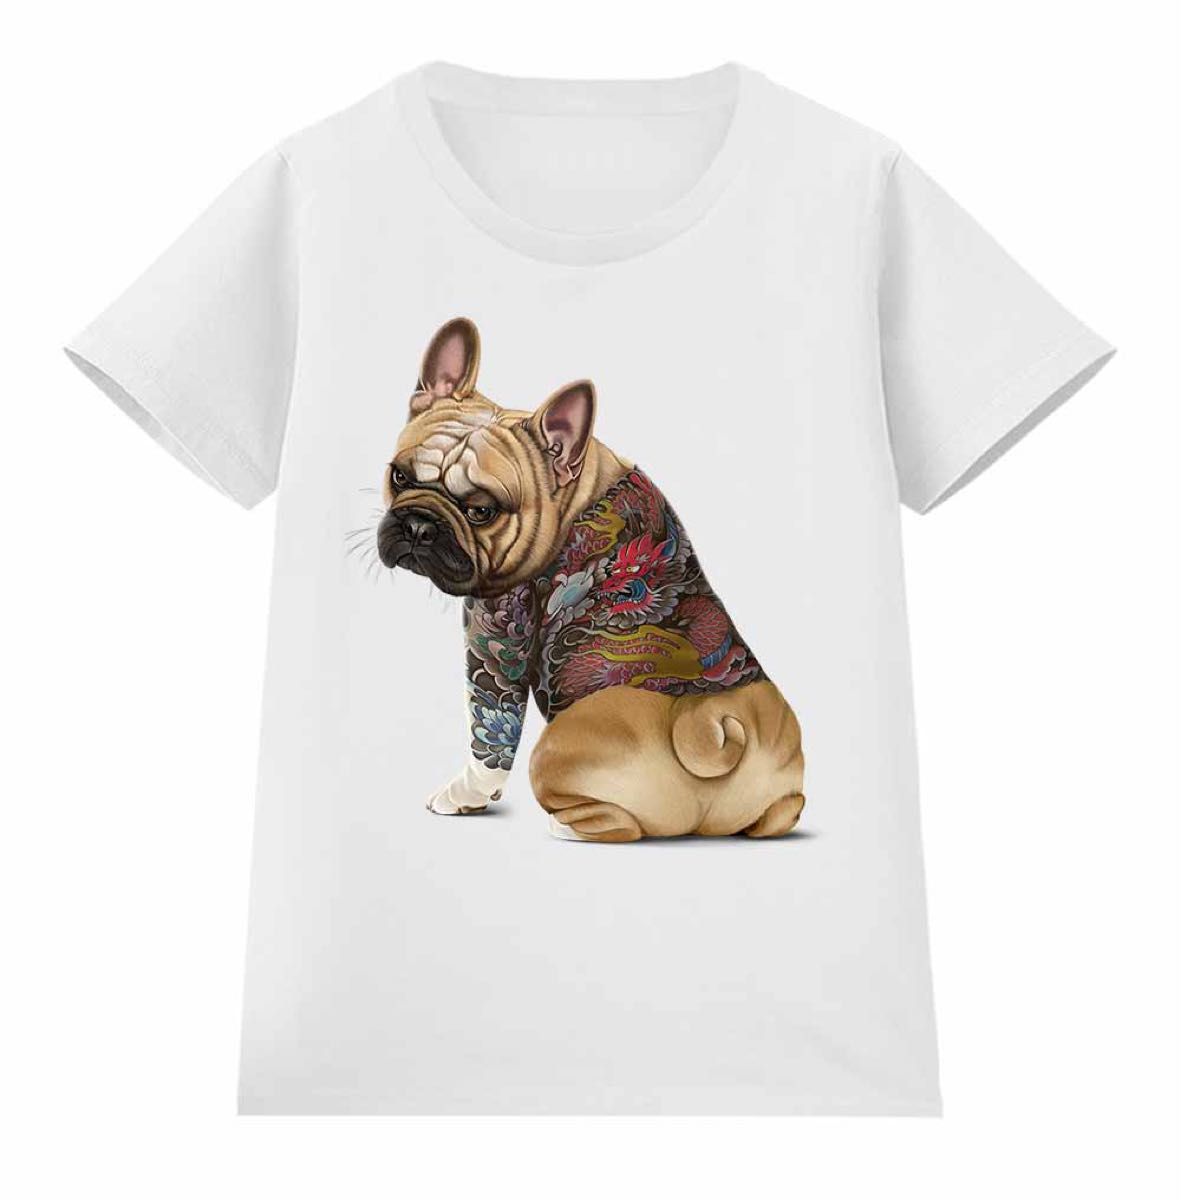 フレンチブルドッグ 犬 いぬ タトゥー 刺青 半袖 Tシャツ メンズ レディース